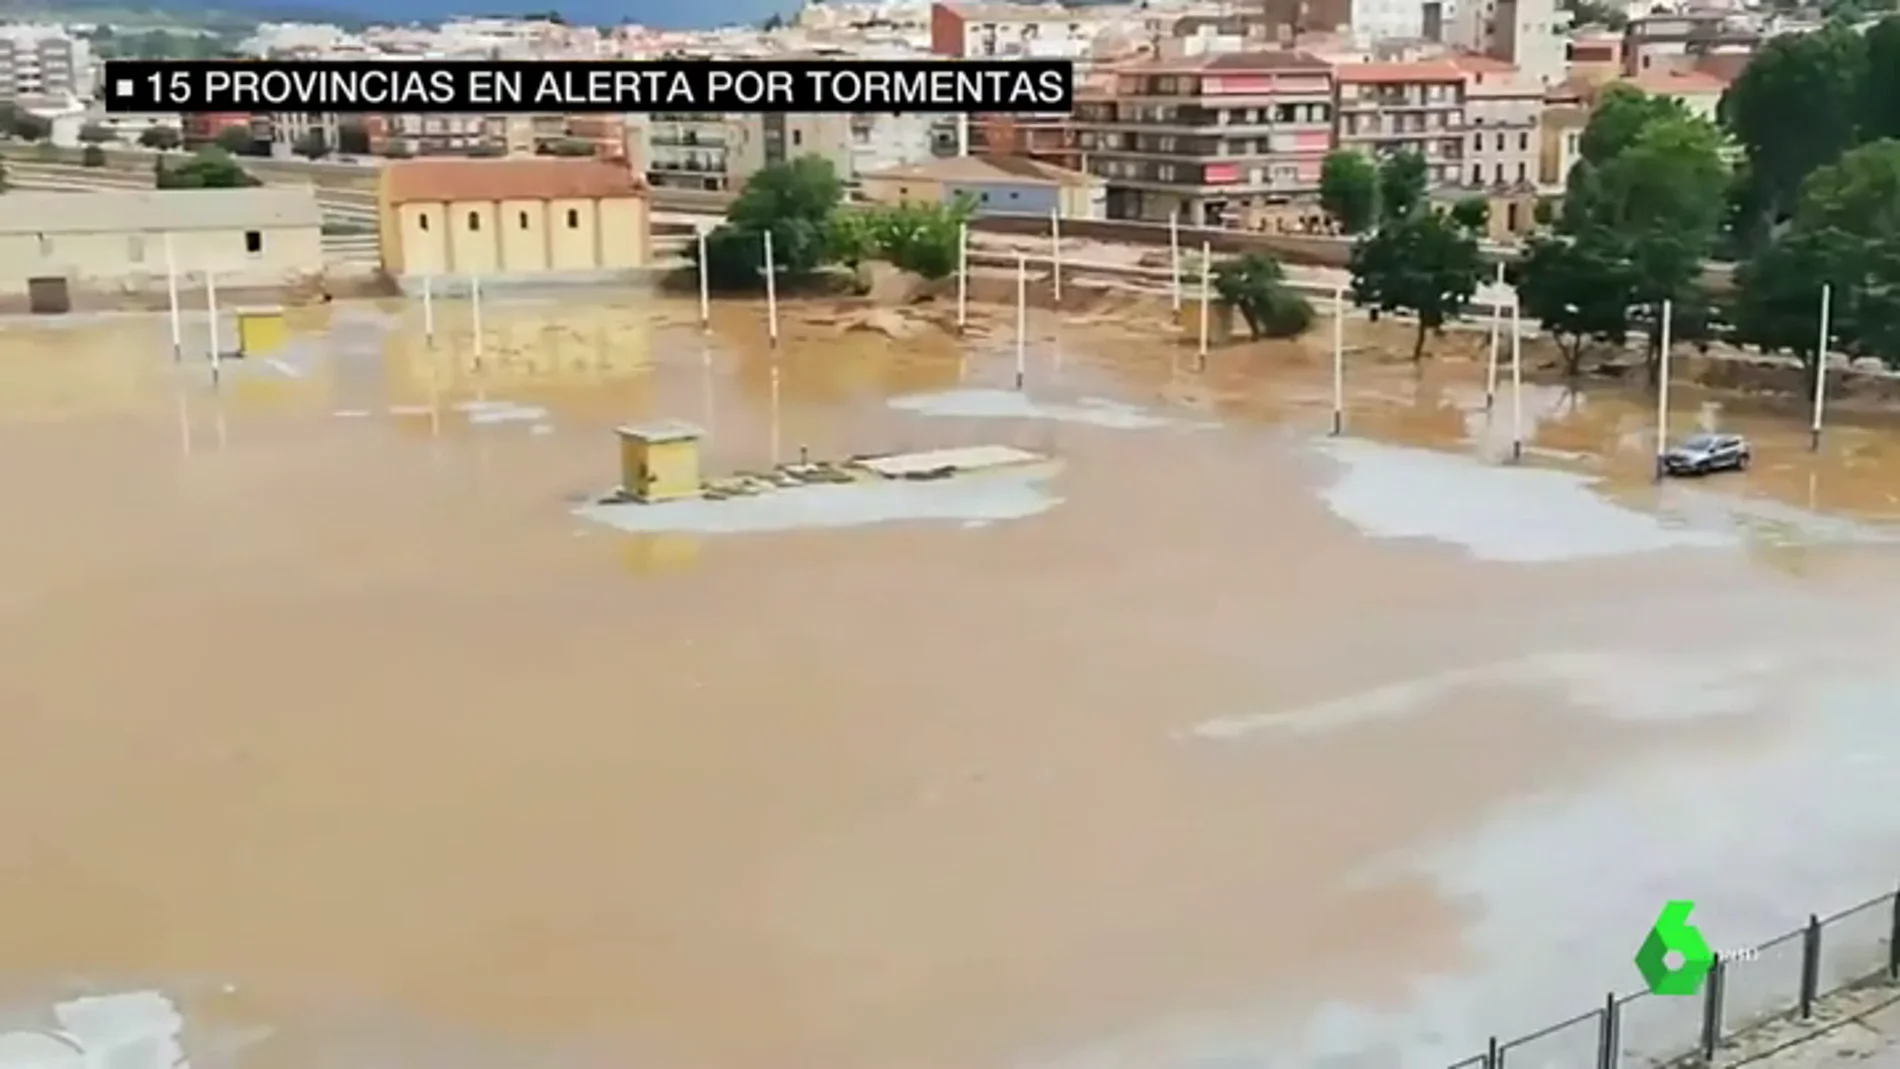 Hay 15 provincias en alerta por fuertes tormentas: la Comunidad Valenciana la más afectada